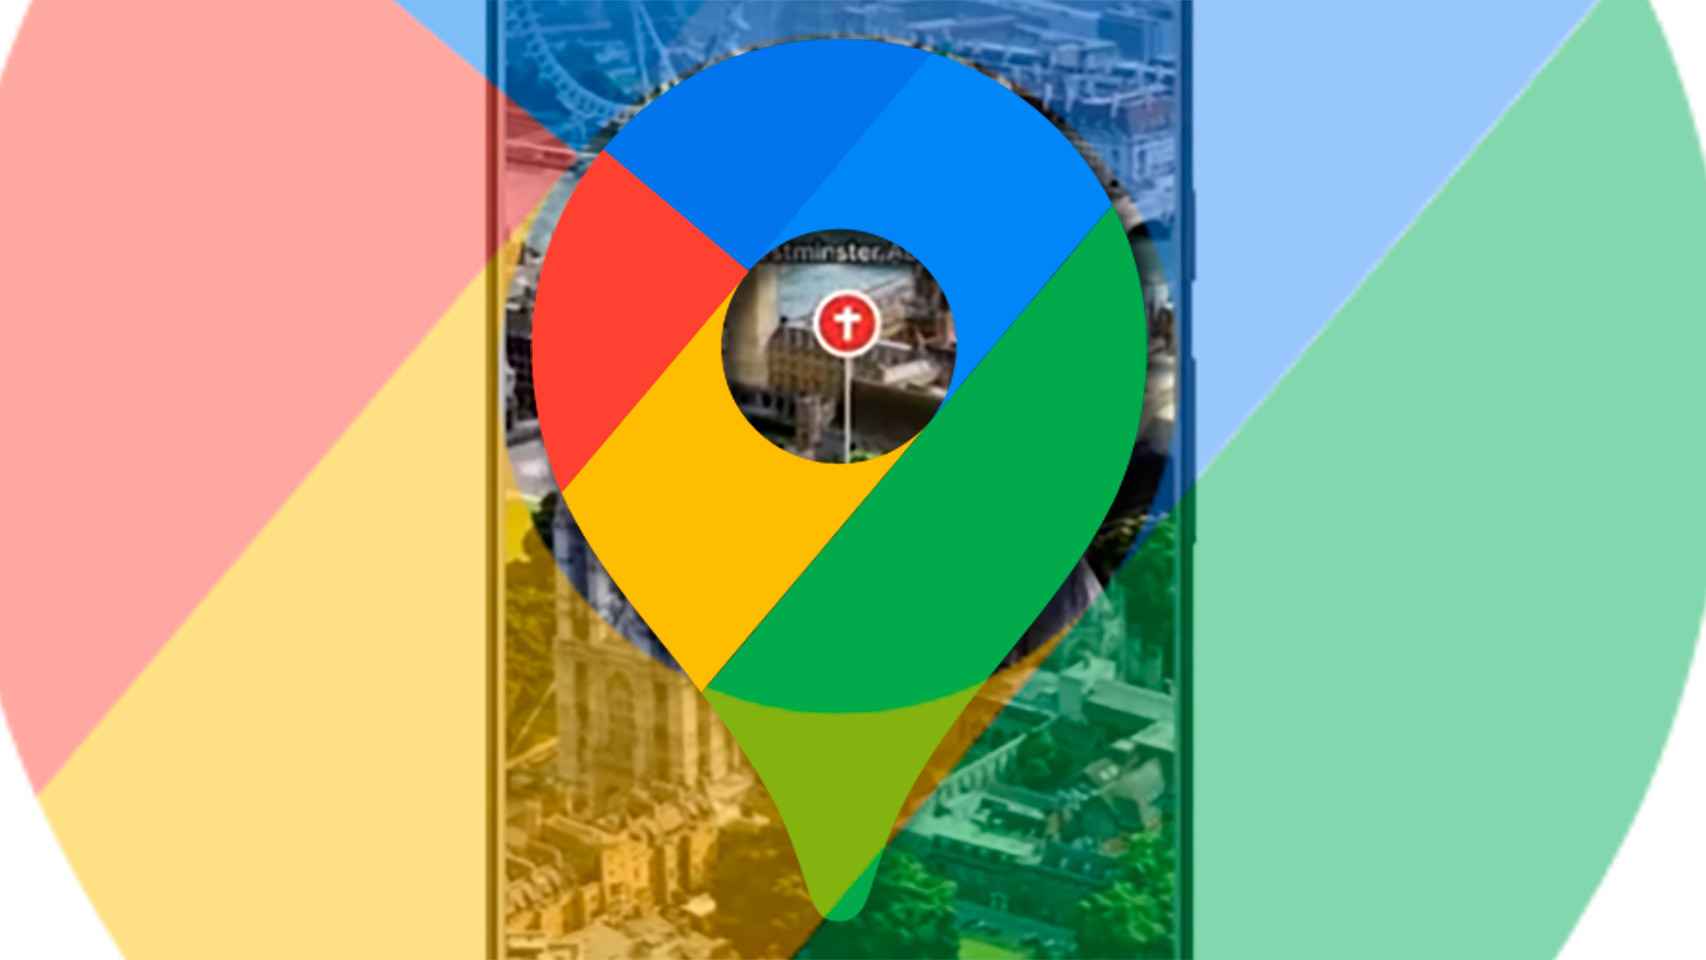 Fija tus rutas preferidas en Google Maps